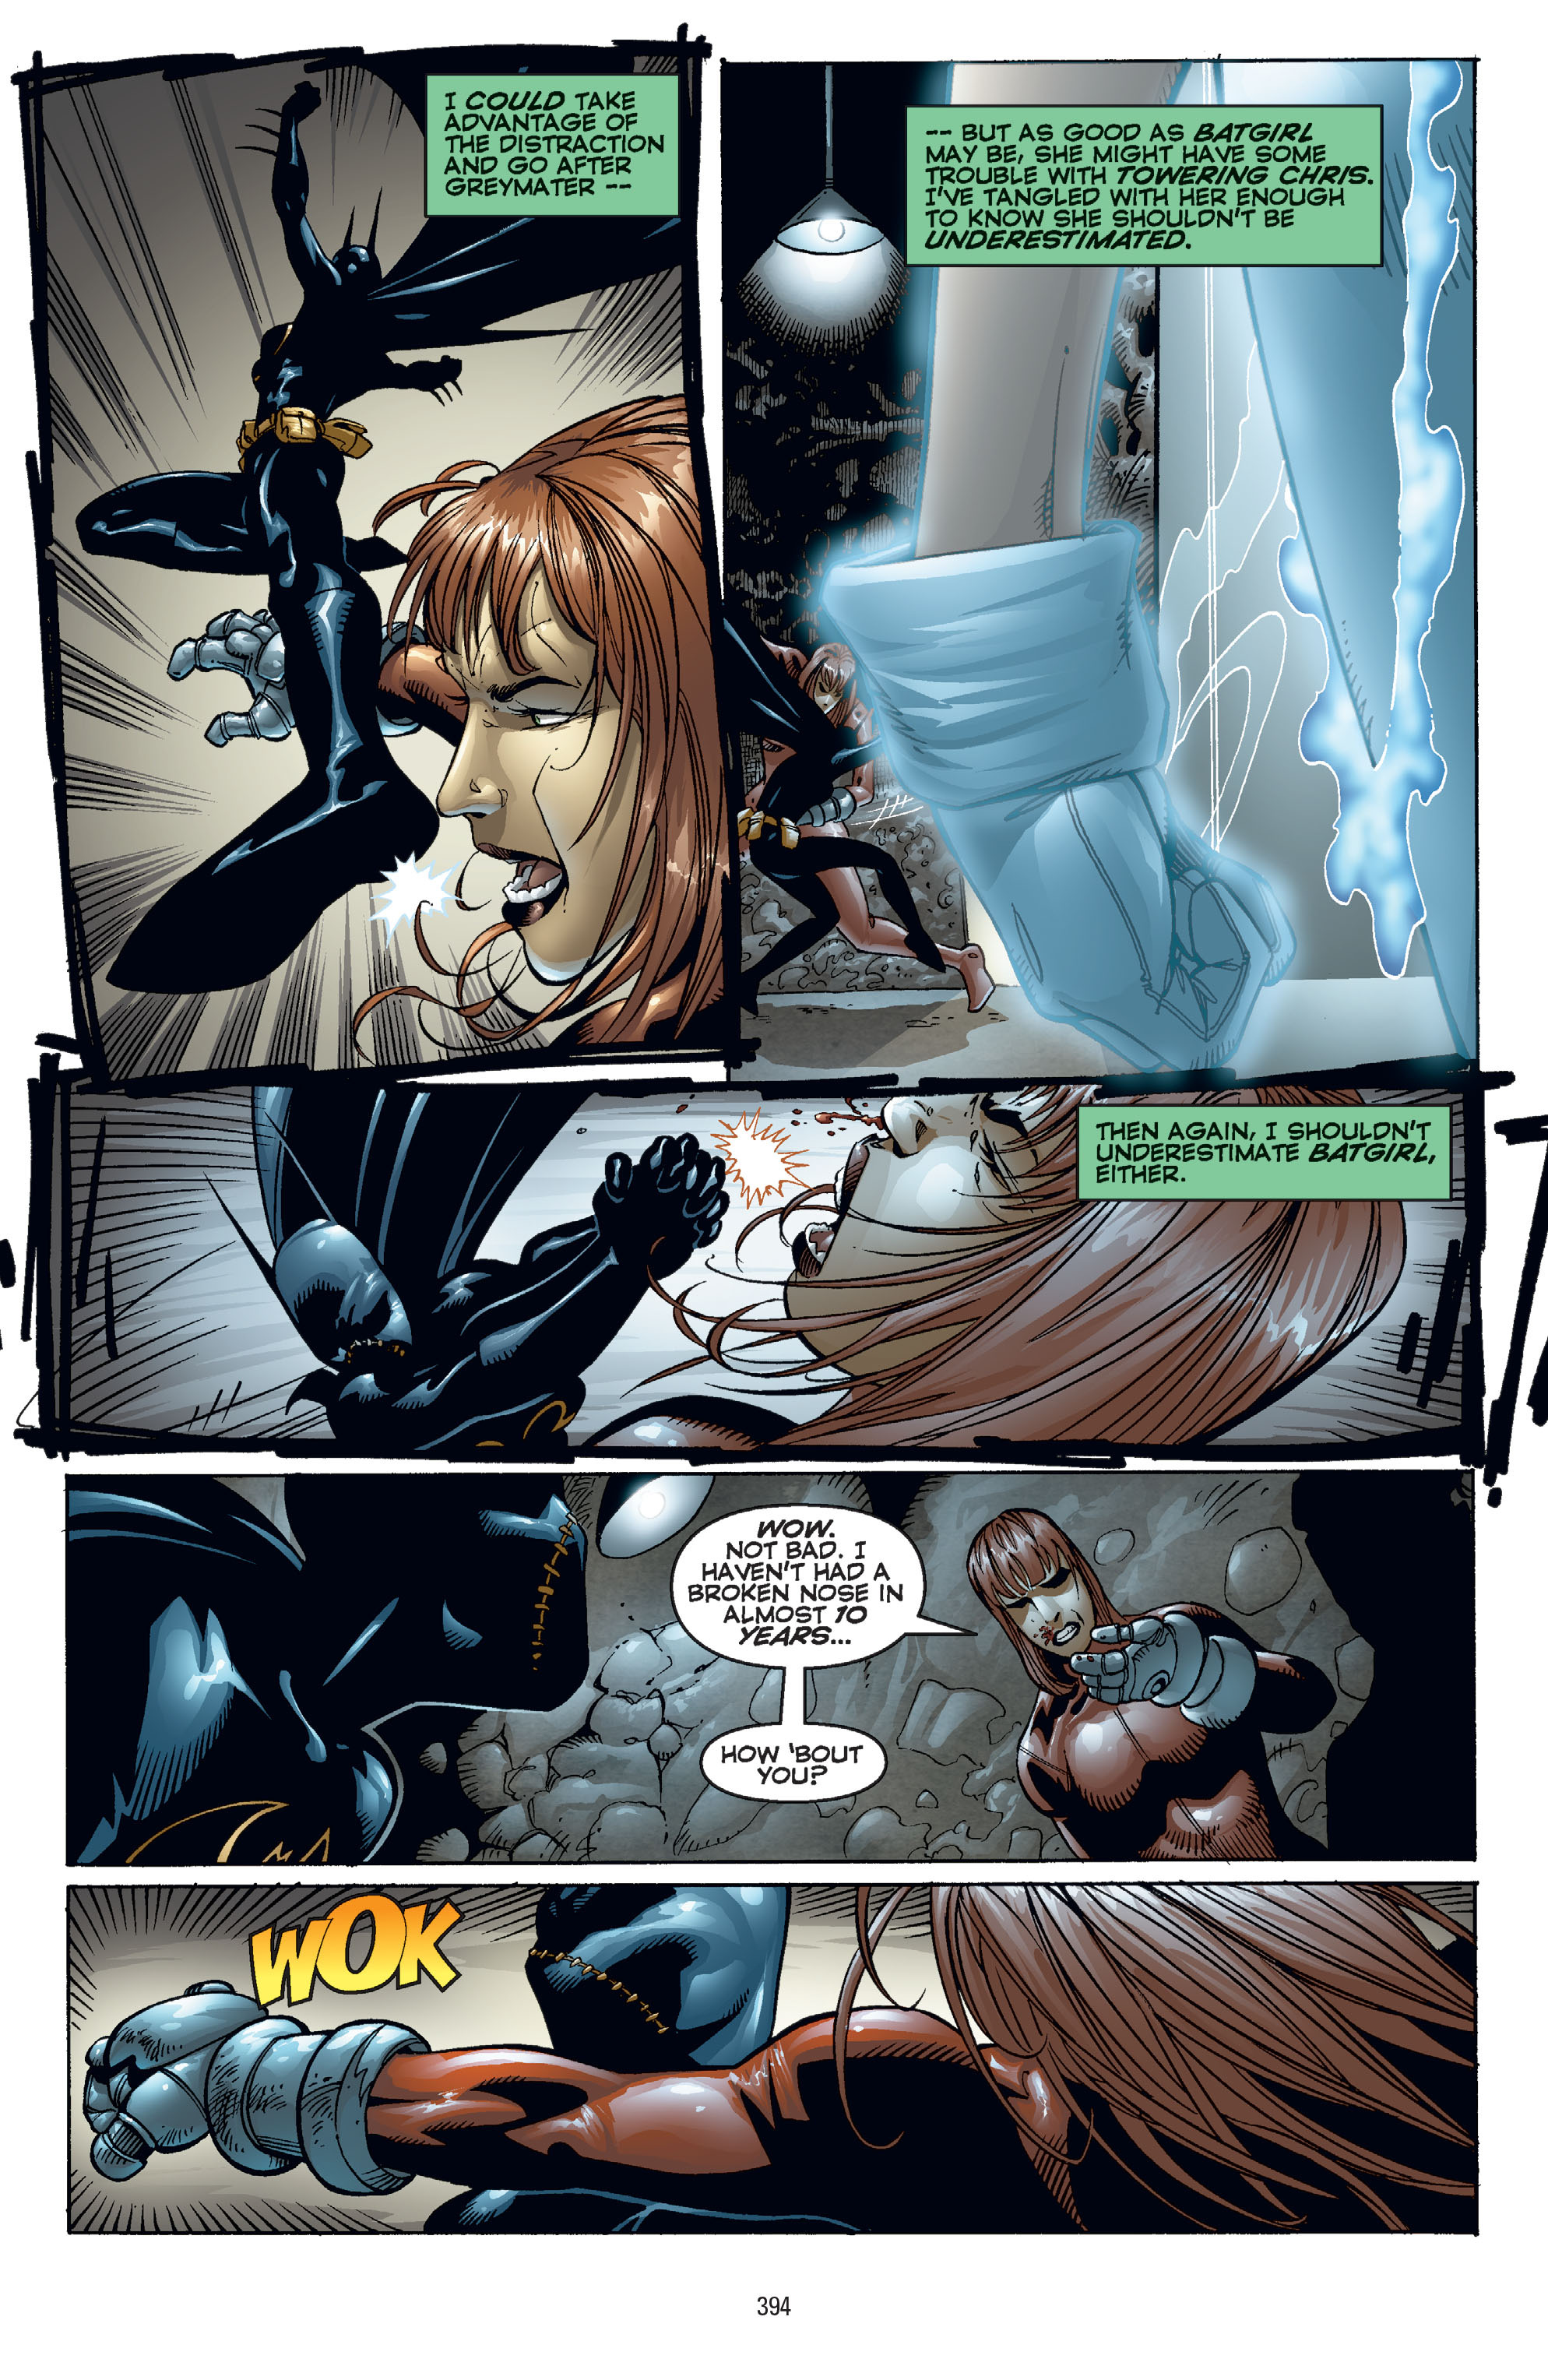 DC Comics/Dark Horse Comics: Justice League Full #1 - English 384